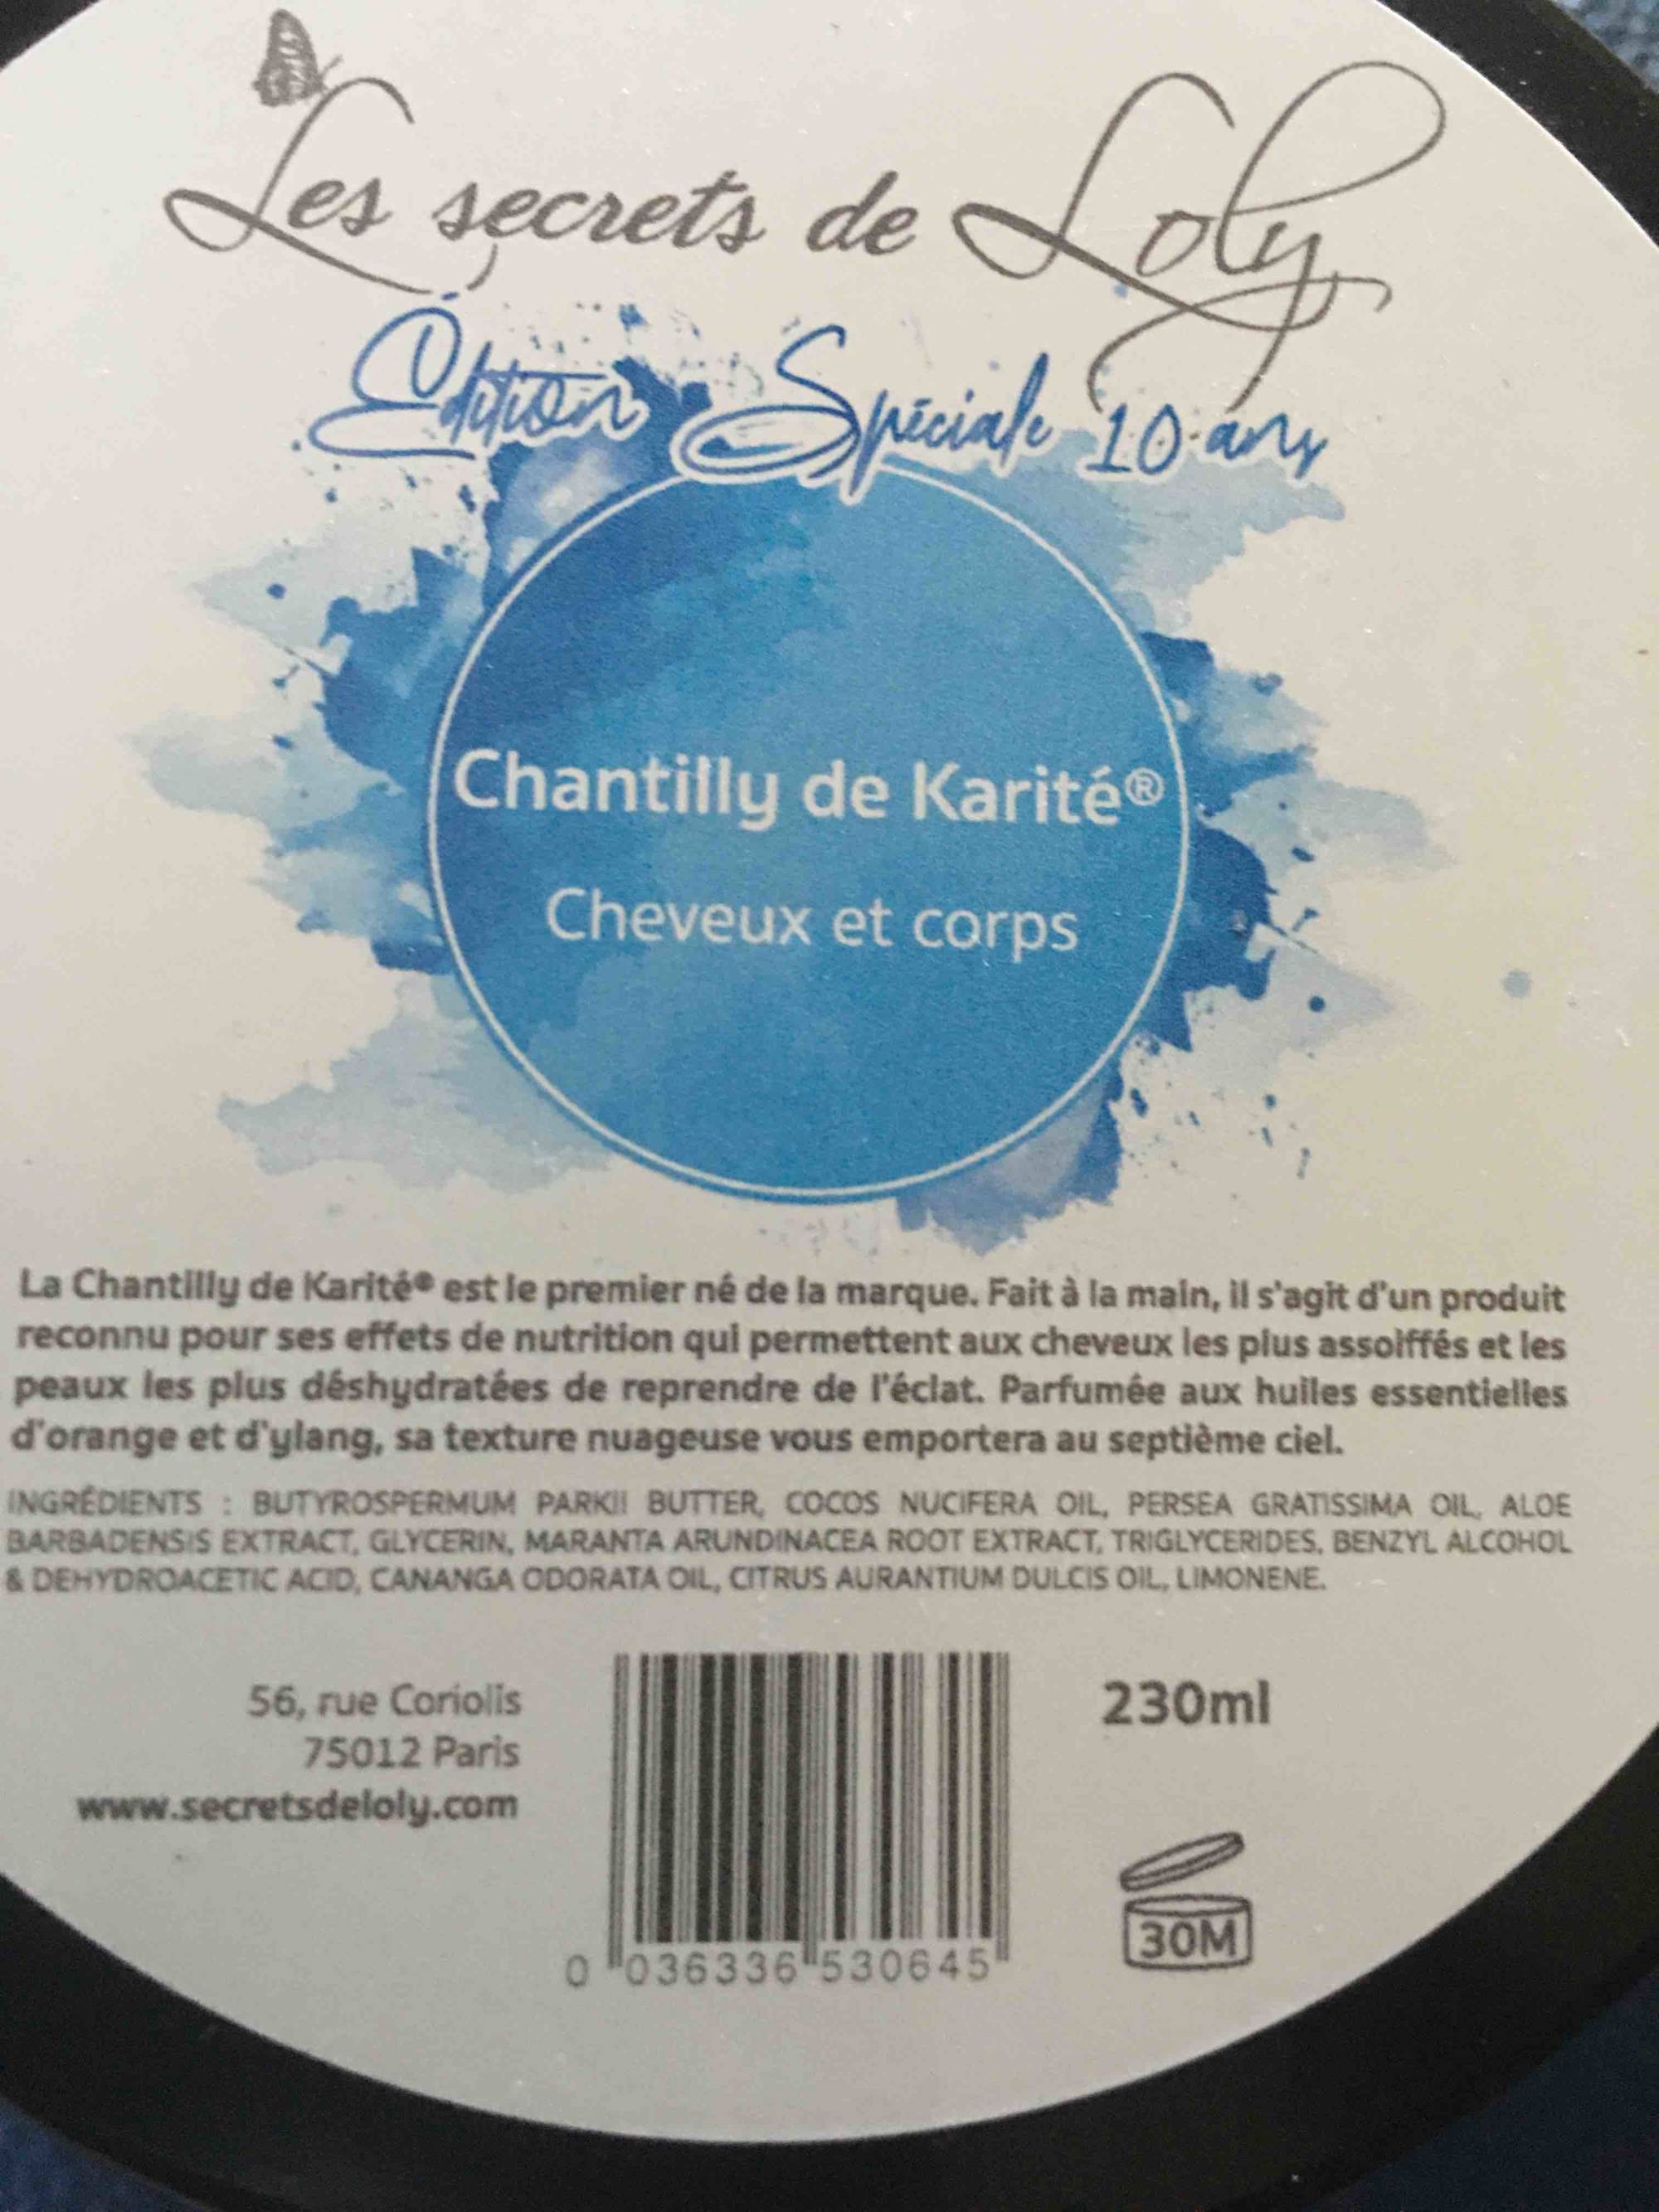 LES SECRETS DE LOLY - Chantilly de karité